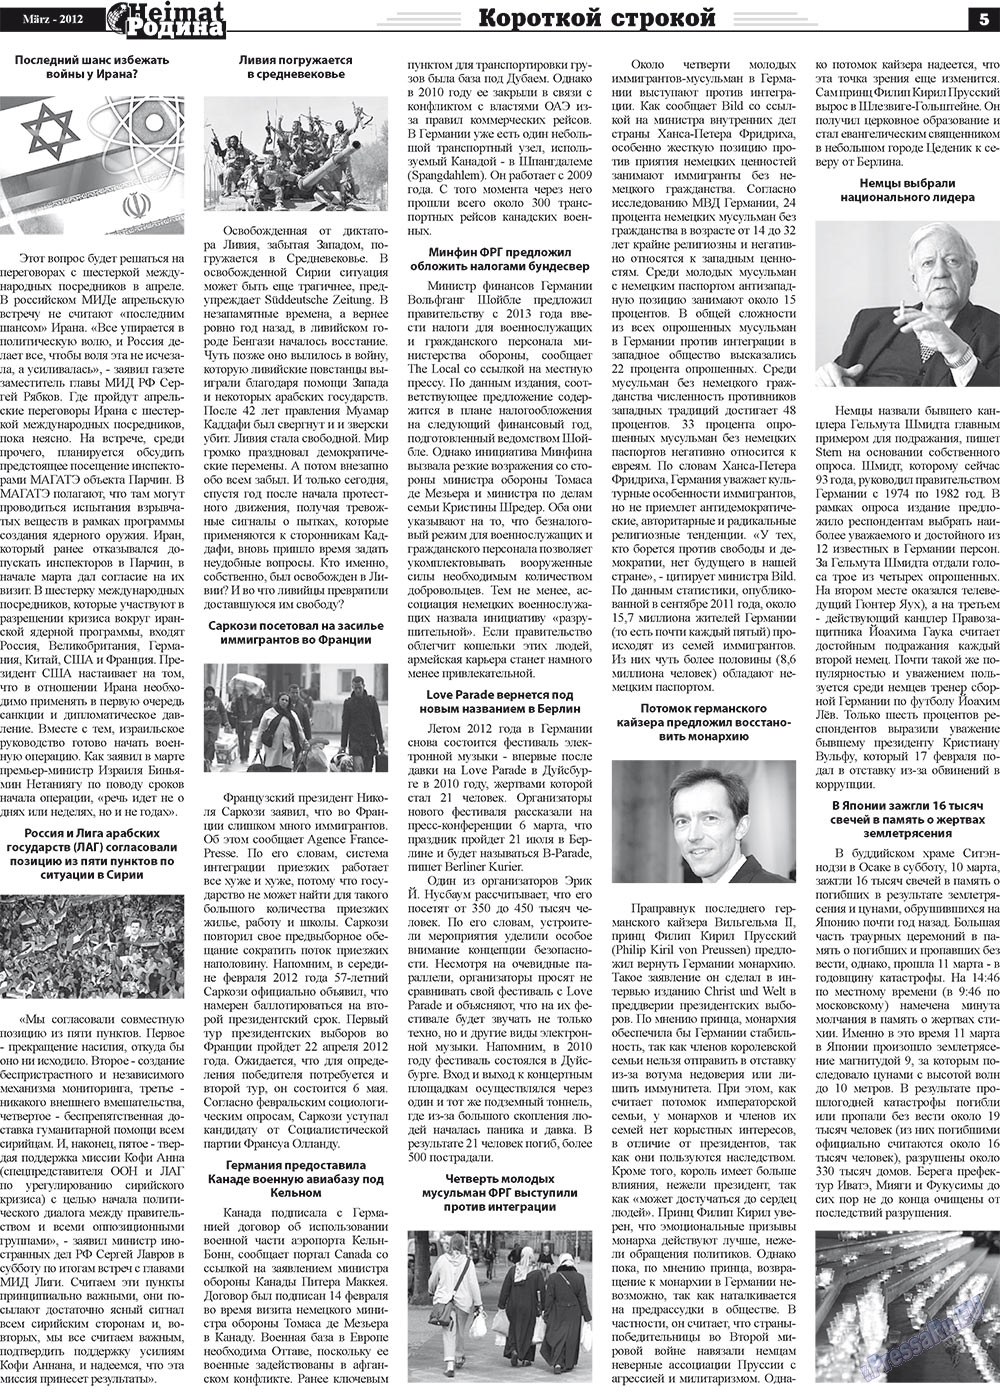 Heimat-Родина (Zeitung). 2012 Jahr, Ausgabe 3, Seite 5